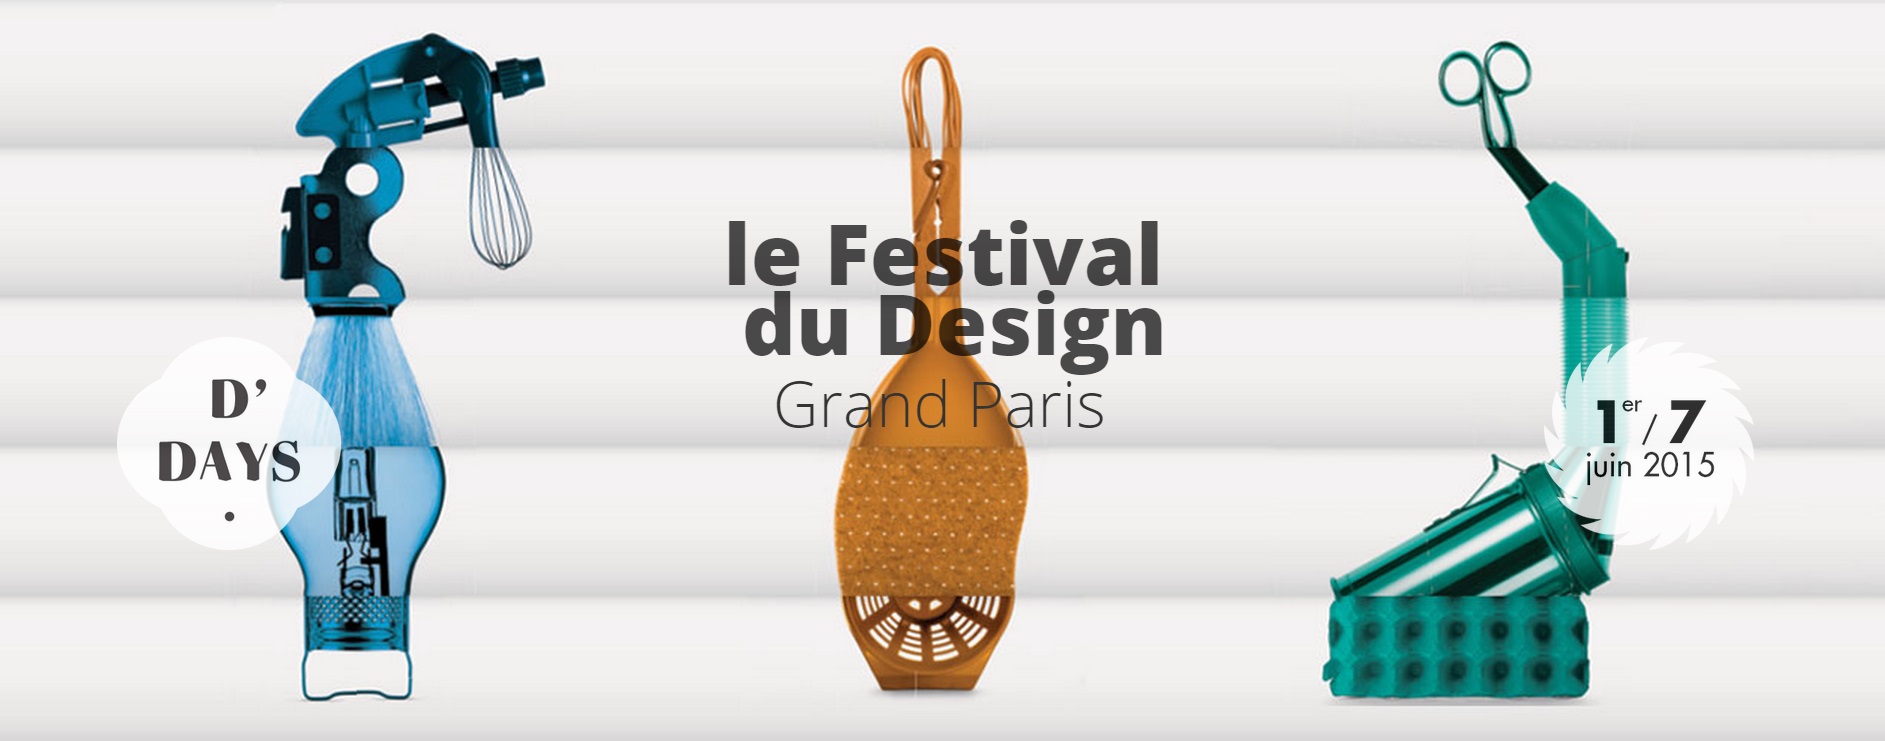 D’Days 2015 c’est parti, la semaine du design du Grand Paris